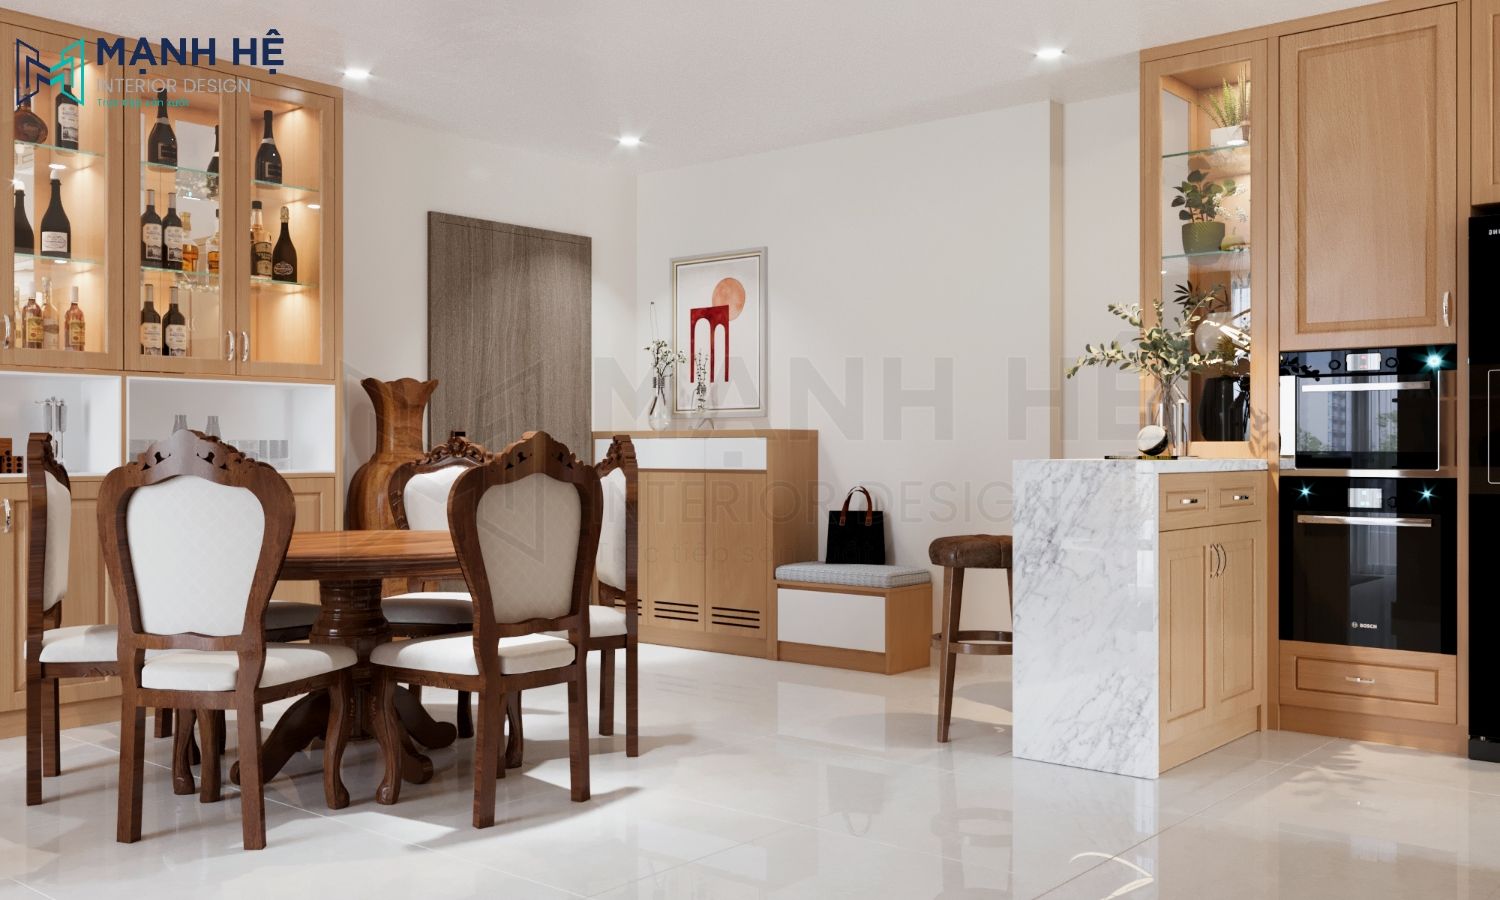 Bộ bàn ăn và tủ rượu được làm bằng gỗ sồi giúp nâng tầm giá trị của tổng thể không gian bếp